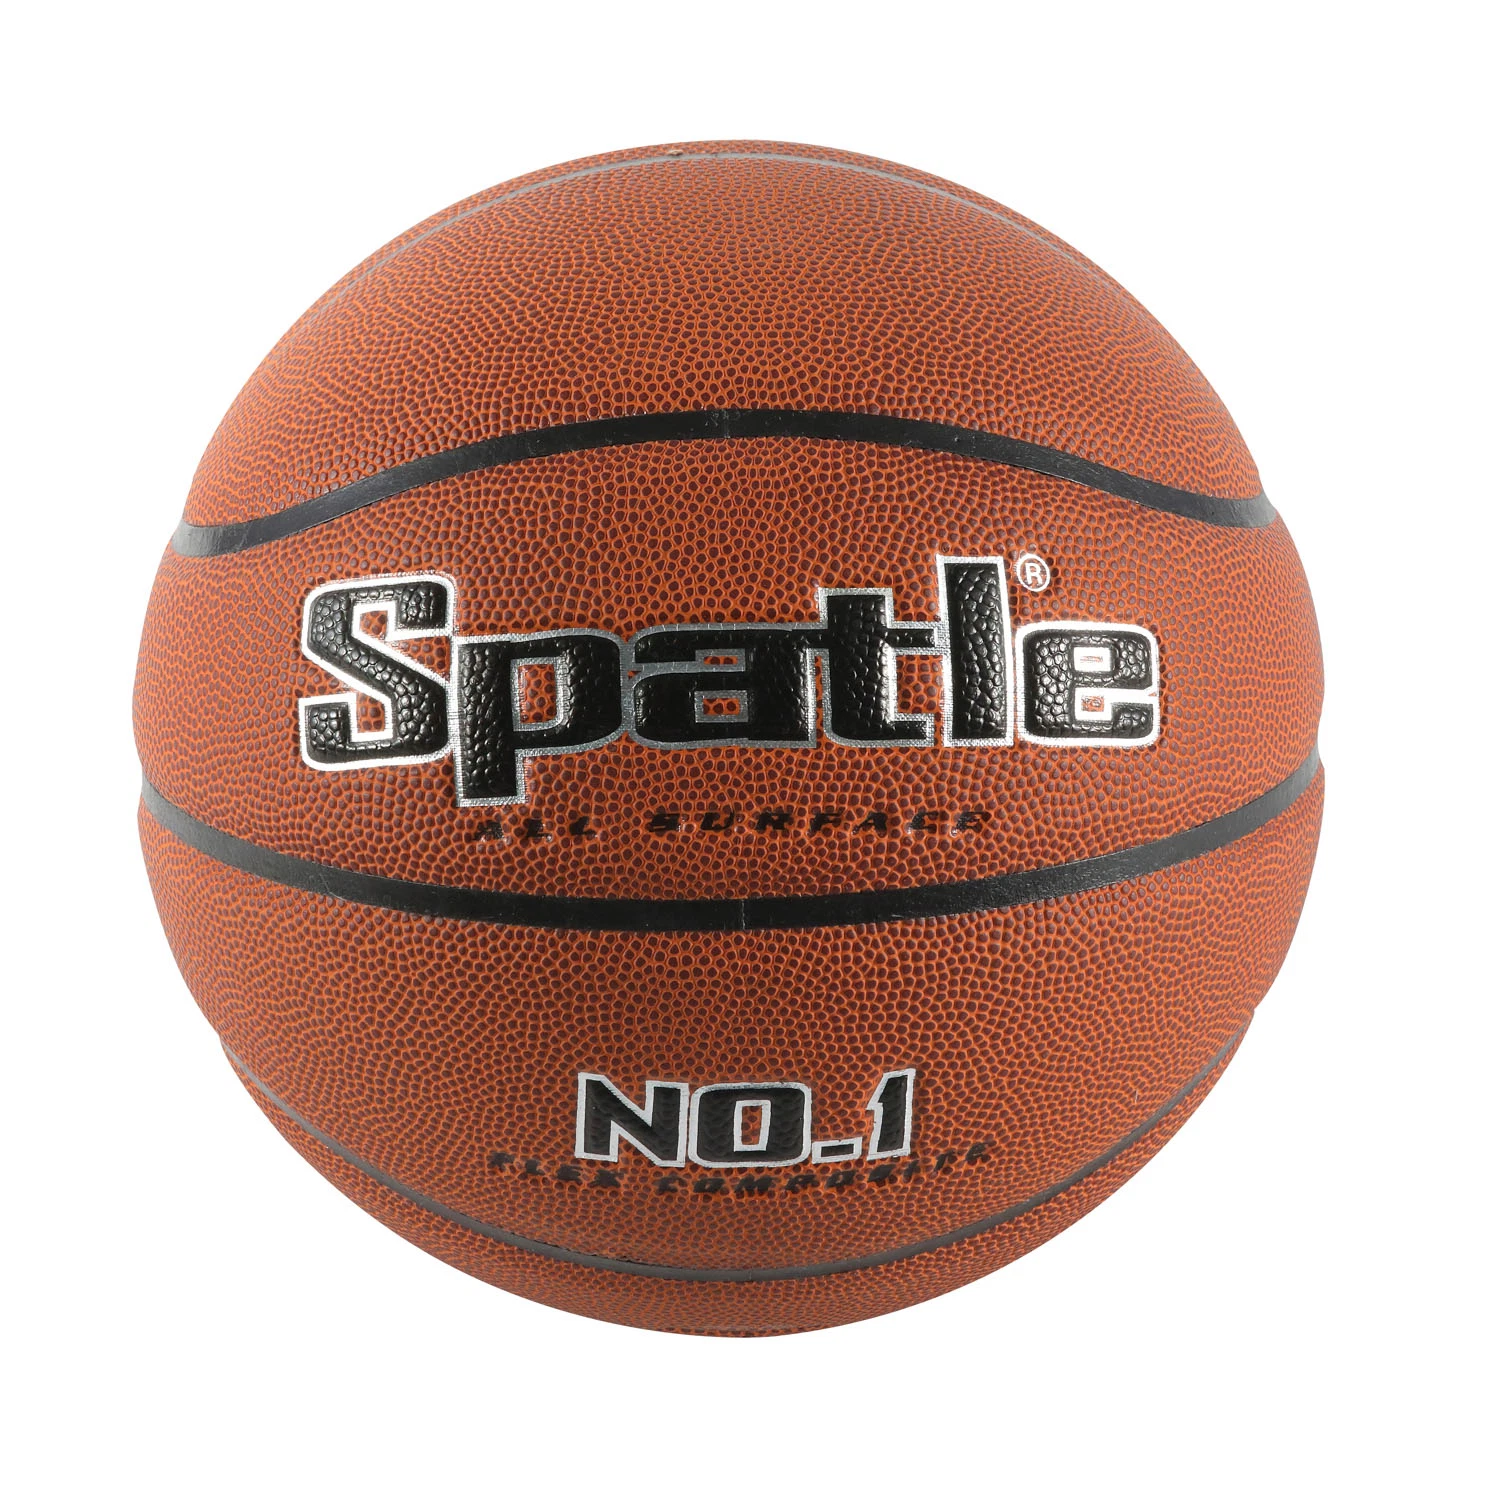 Customized Wholesale Size 7 Leather Basketball